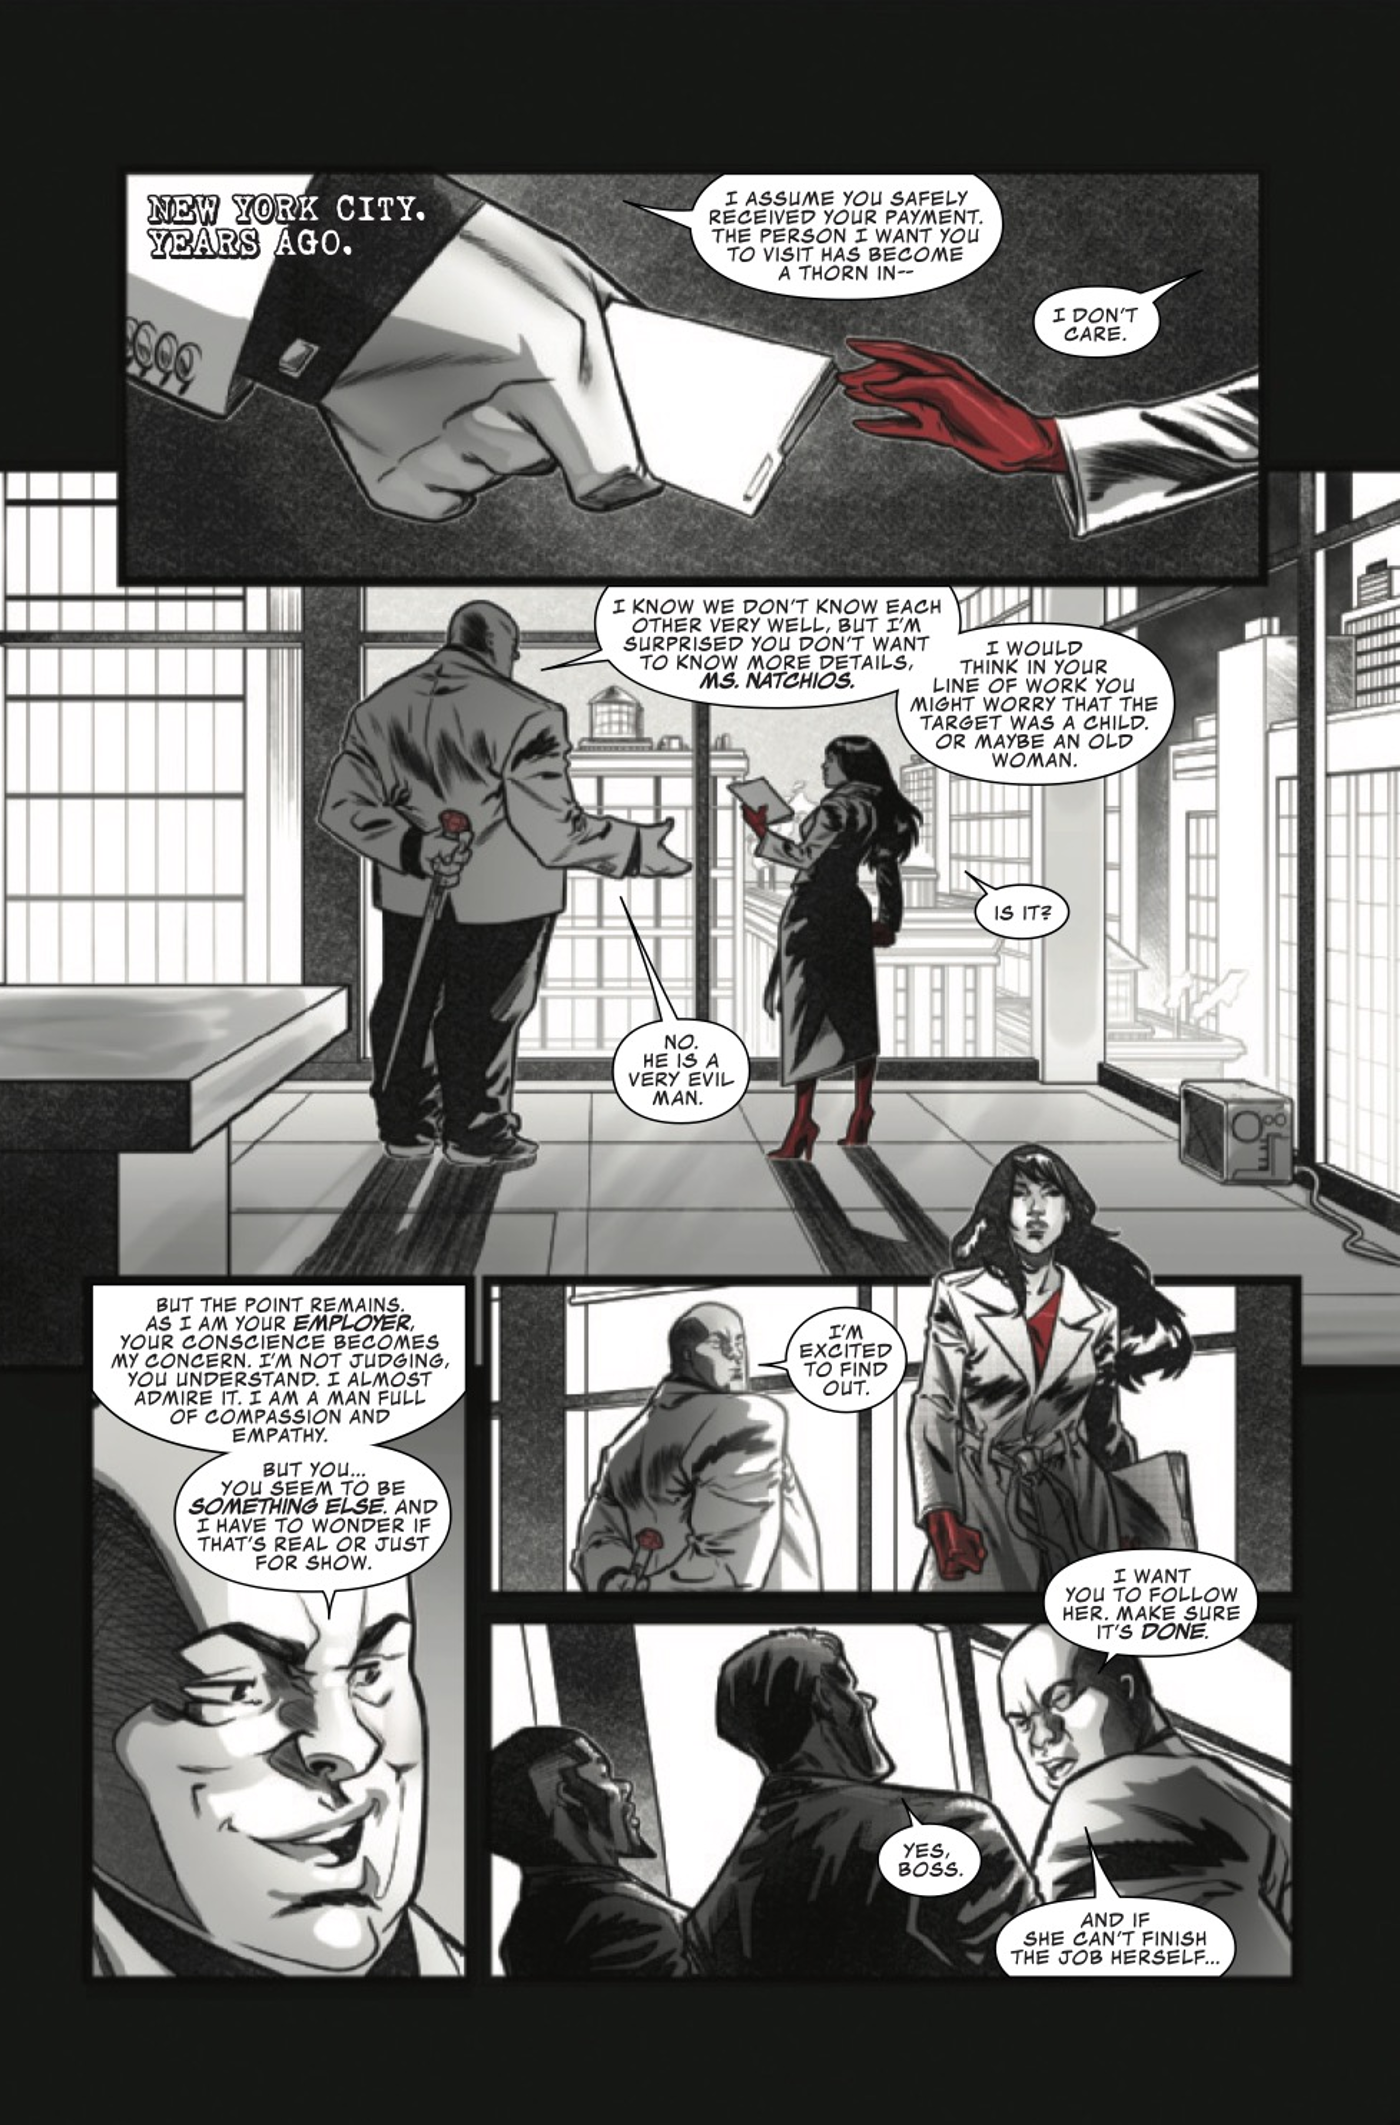 Elektra black white blood #4 preview page 2